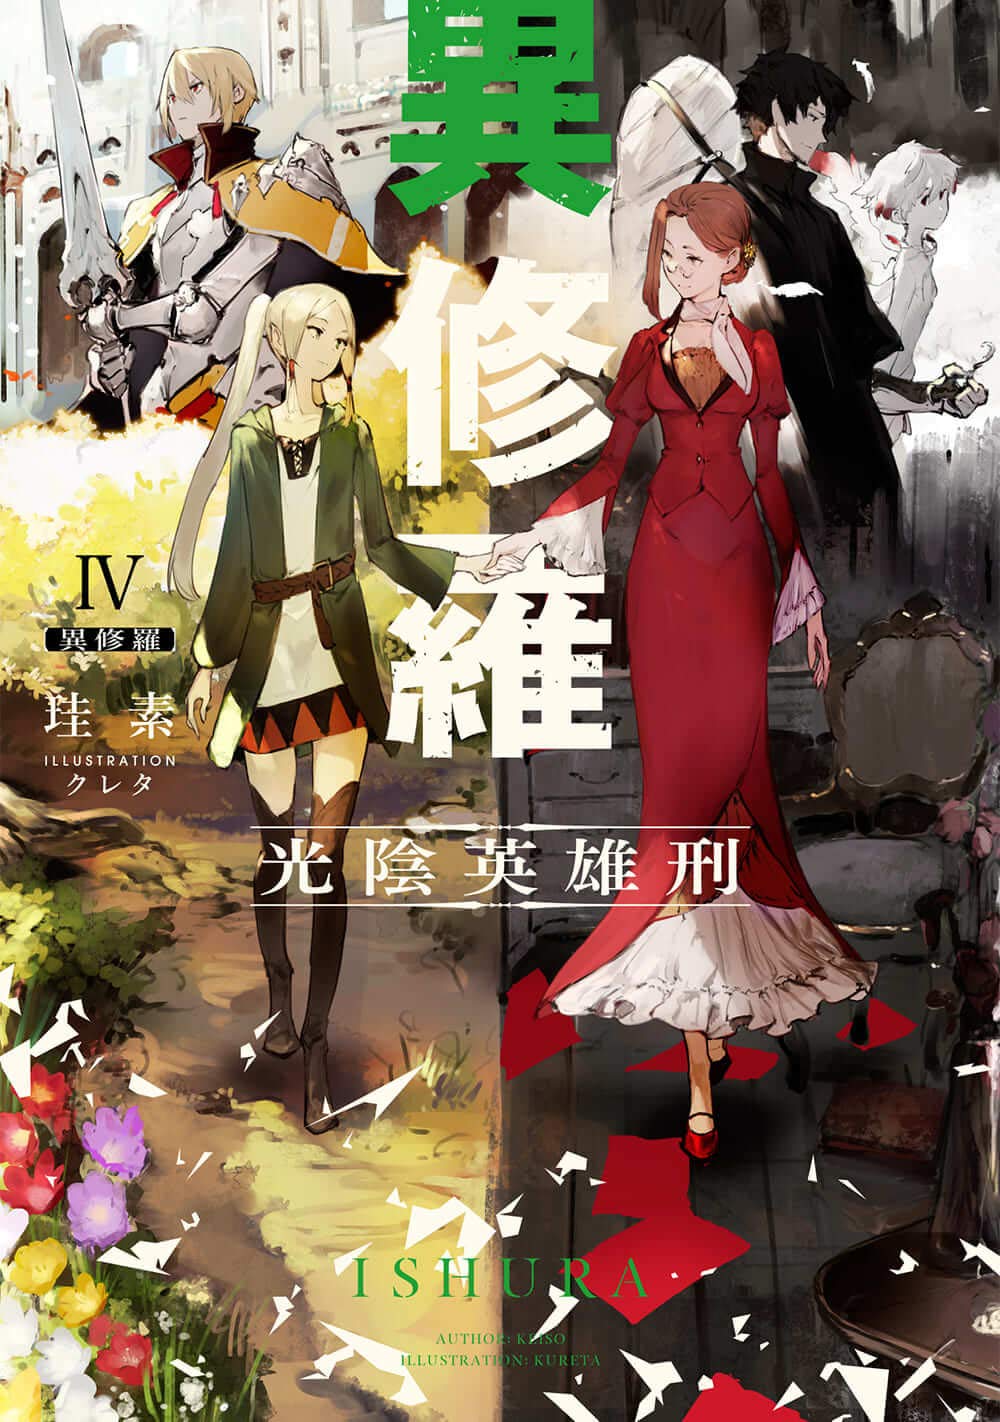 Ishura Action Fantasy Light Novels Getting TV Anime, Teaser PV